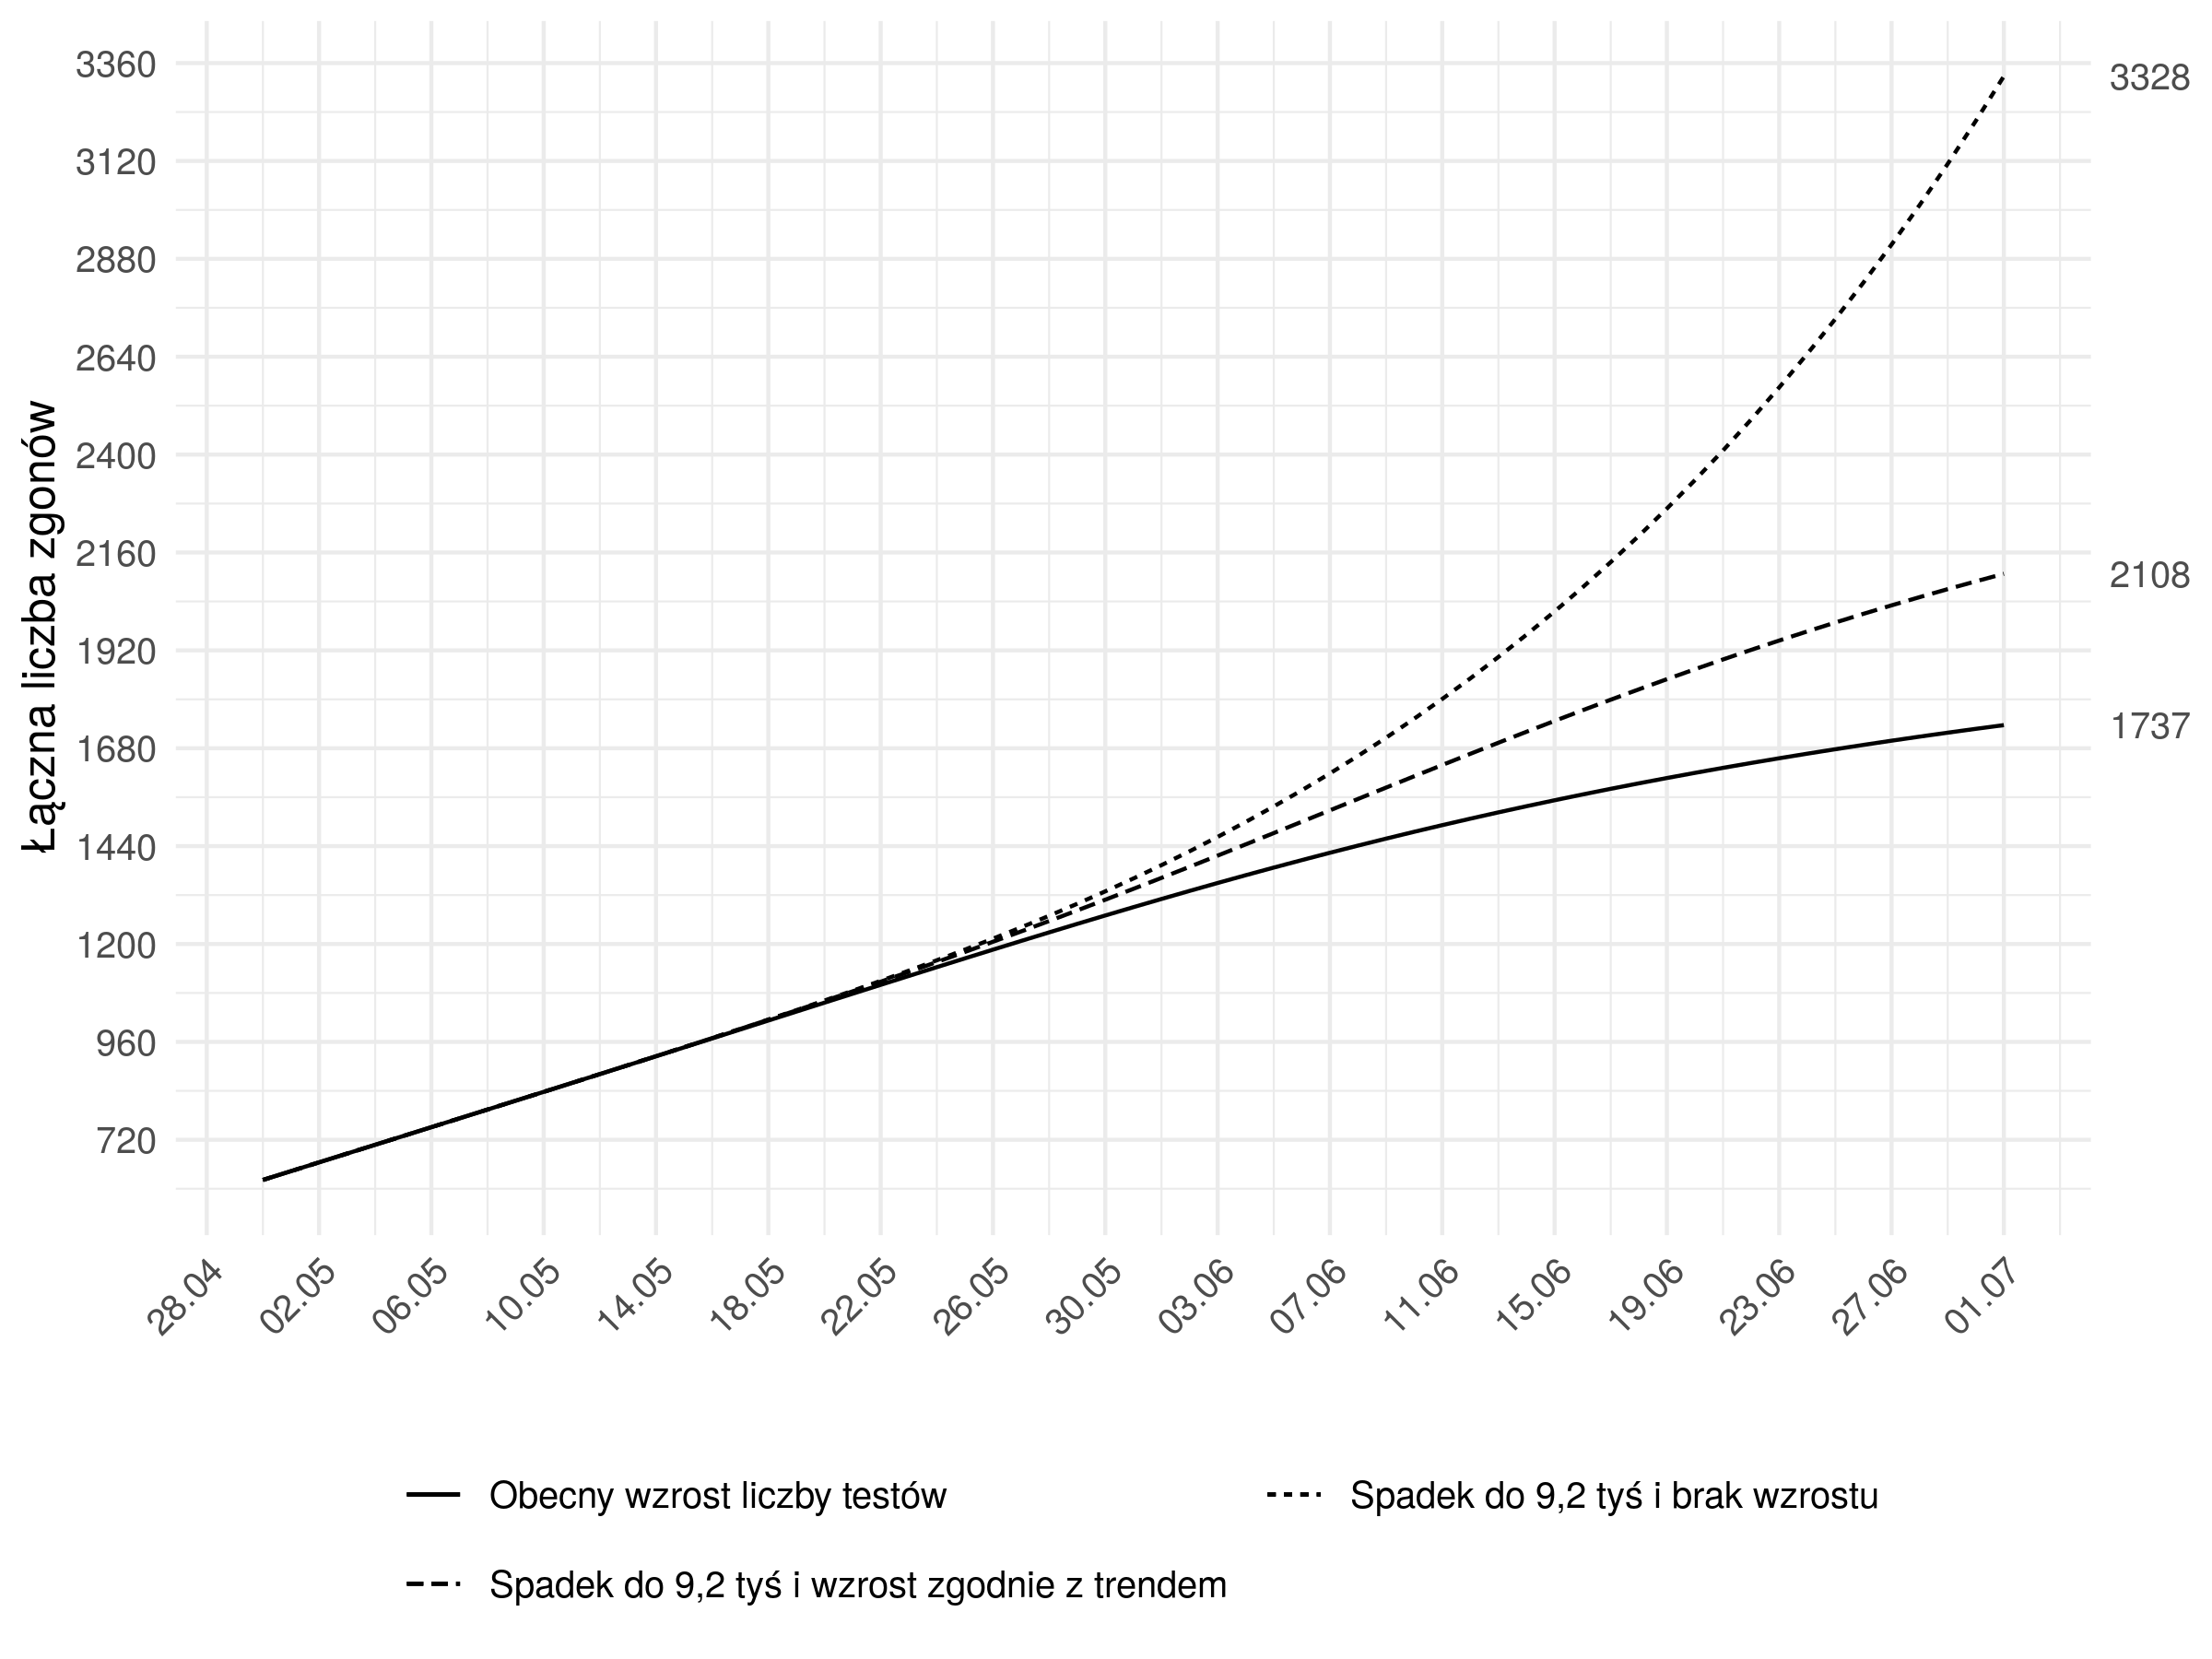 <b>Prognozowana łączna liczba zgonów w zależności od scenariusza testowania.</b> Na wykresie przedstawiono prognozowane trendy zgonów wg 3 scenariuszy opisanych na Rysunku 1:  1) Obecny trend - liczba testów wzrasta podobnie jak dotychczas aż do osiągnięcia pułapu 25 000 testów dziennie (maksymalna zdolność systemu w chwili obecnej), bez uwzględnienia spadku w okresie majówki; 2) Spadek do 9200 i wzrost zgodnie z trendem - liczba testów spada do 9200 2 maja i następnie wzrasta podobnie jak dotychczas aż do osiągnięcia pułapu 25 000 testów dziennie; 3) Spadek do 9200 i brak wzrostu - liczba testów po okresie majówki pozostaje na poziomie 9200 badań dziennie.